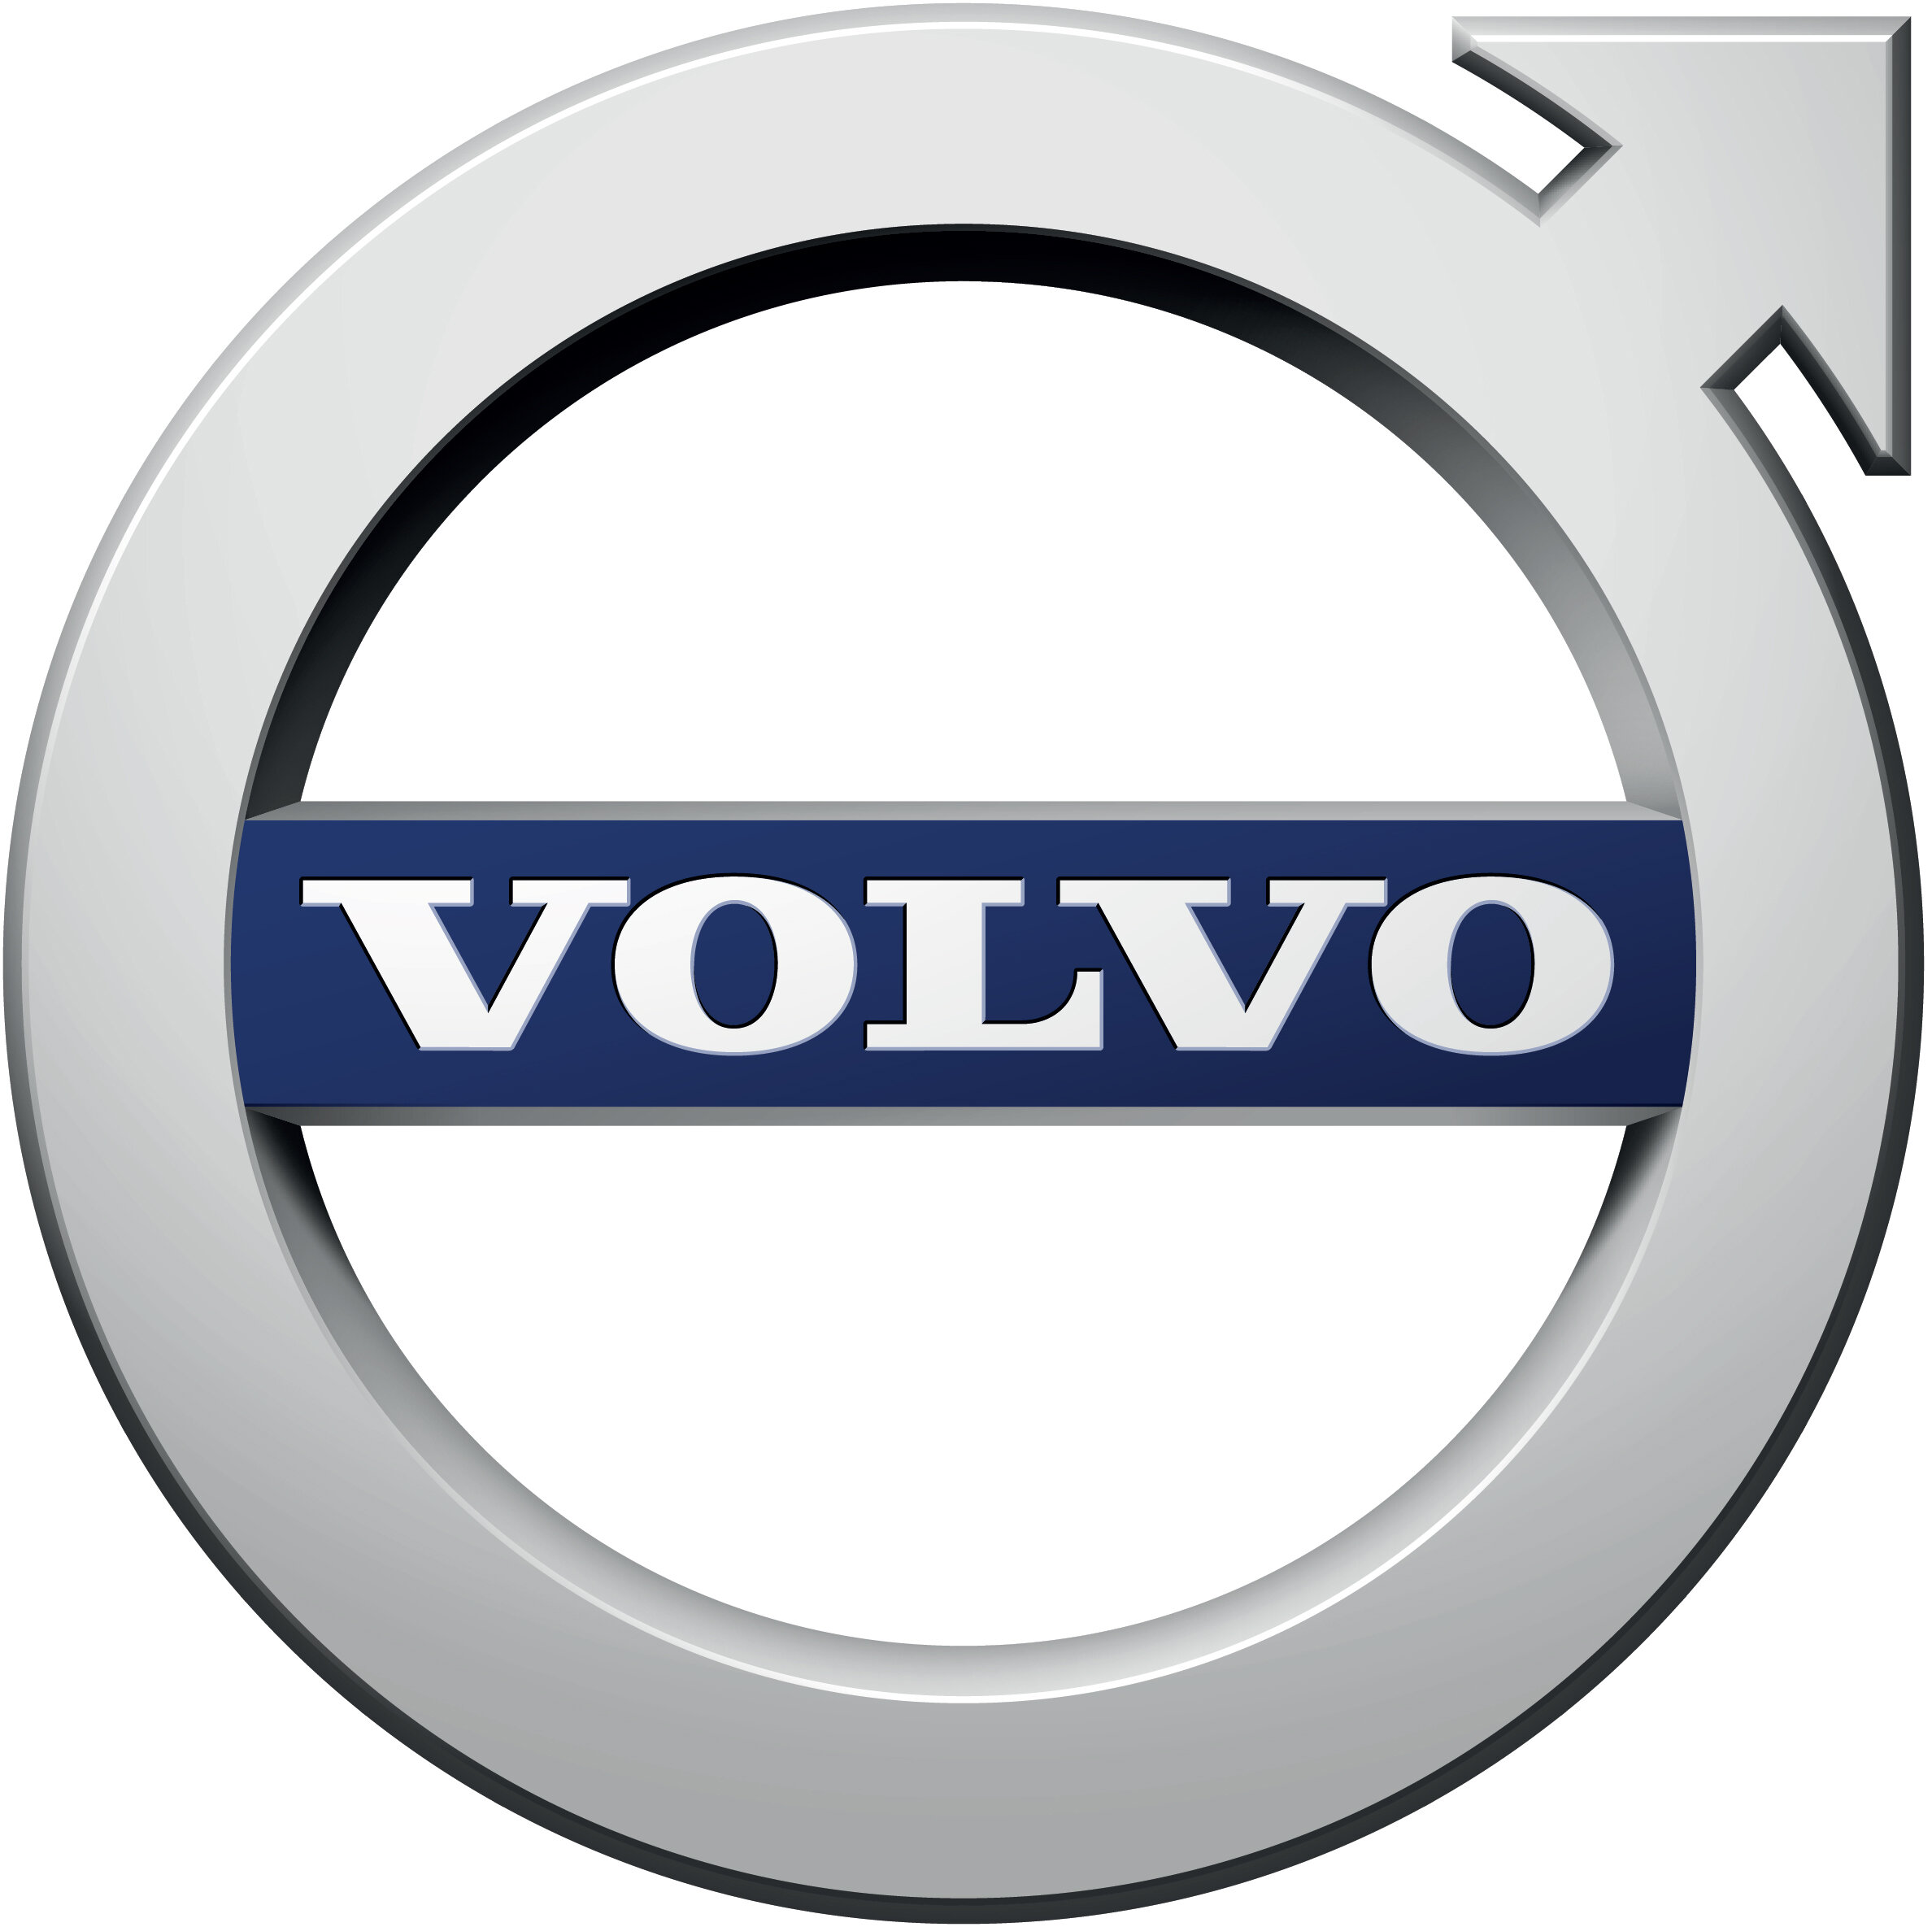 Марка вольво: Volvo C70 - обзор, цены, видео, технические характеристики Вольво С70